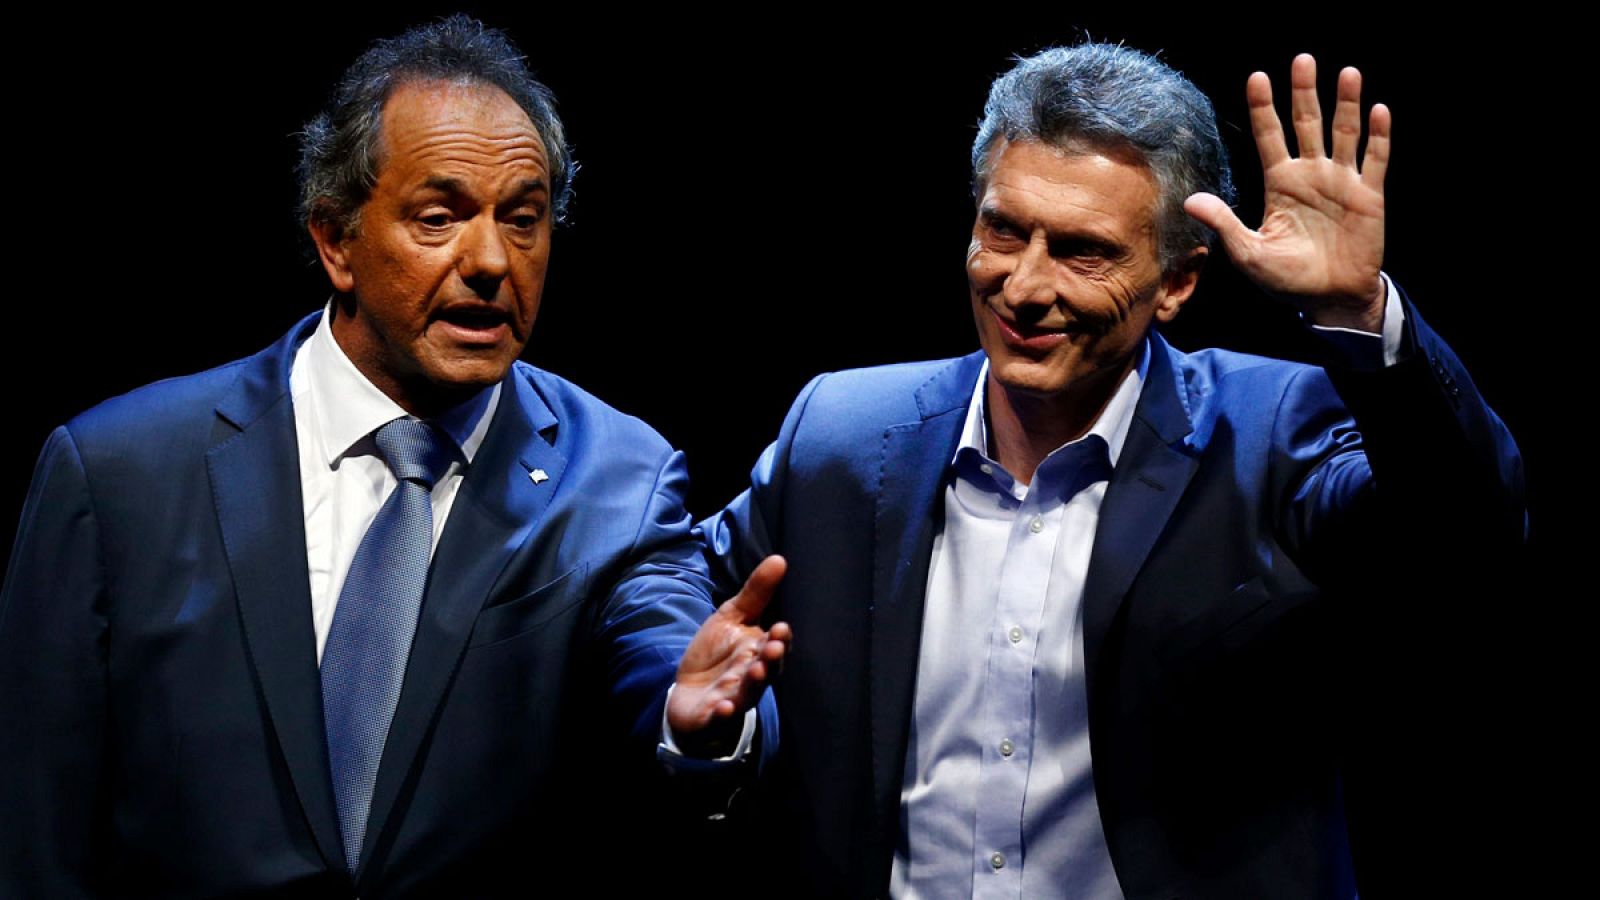 El candidato oficialista Daniel Scioli y el opositor Mauricio Macri se enfrentan en un debate televisado una semana antes de la segunda vuelta de las elecciones en Argentina.